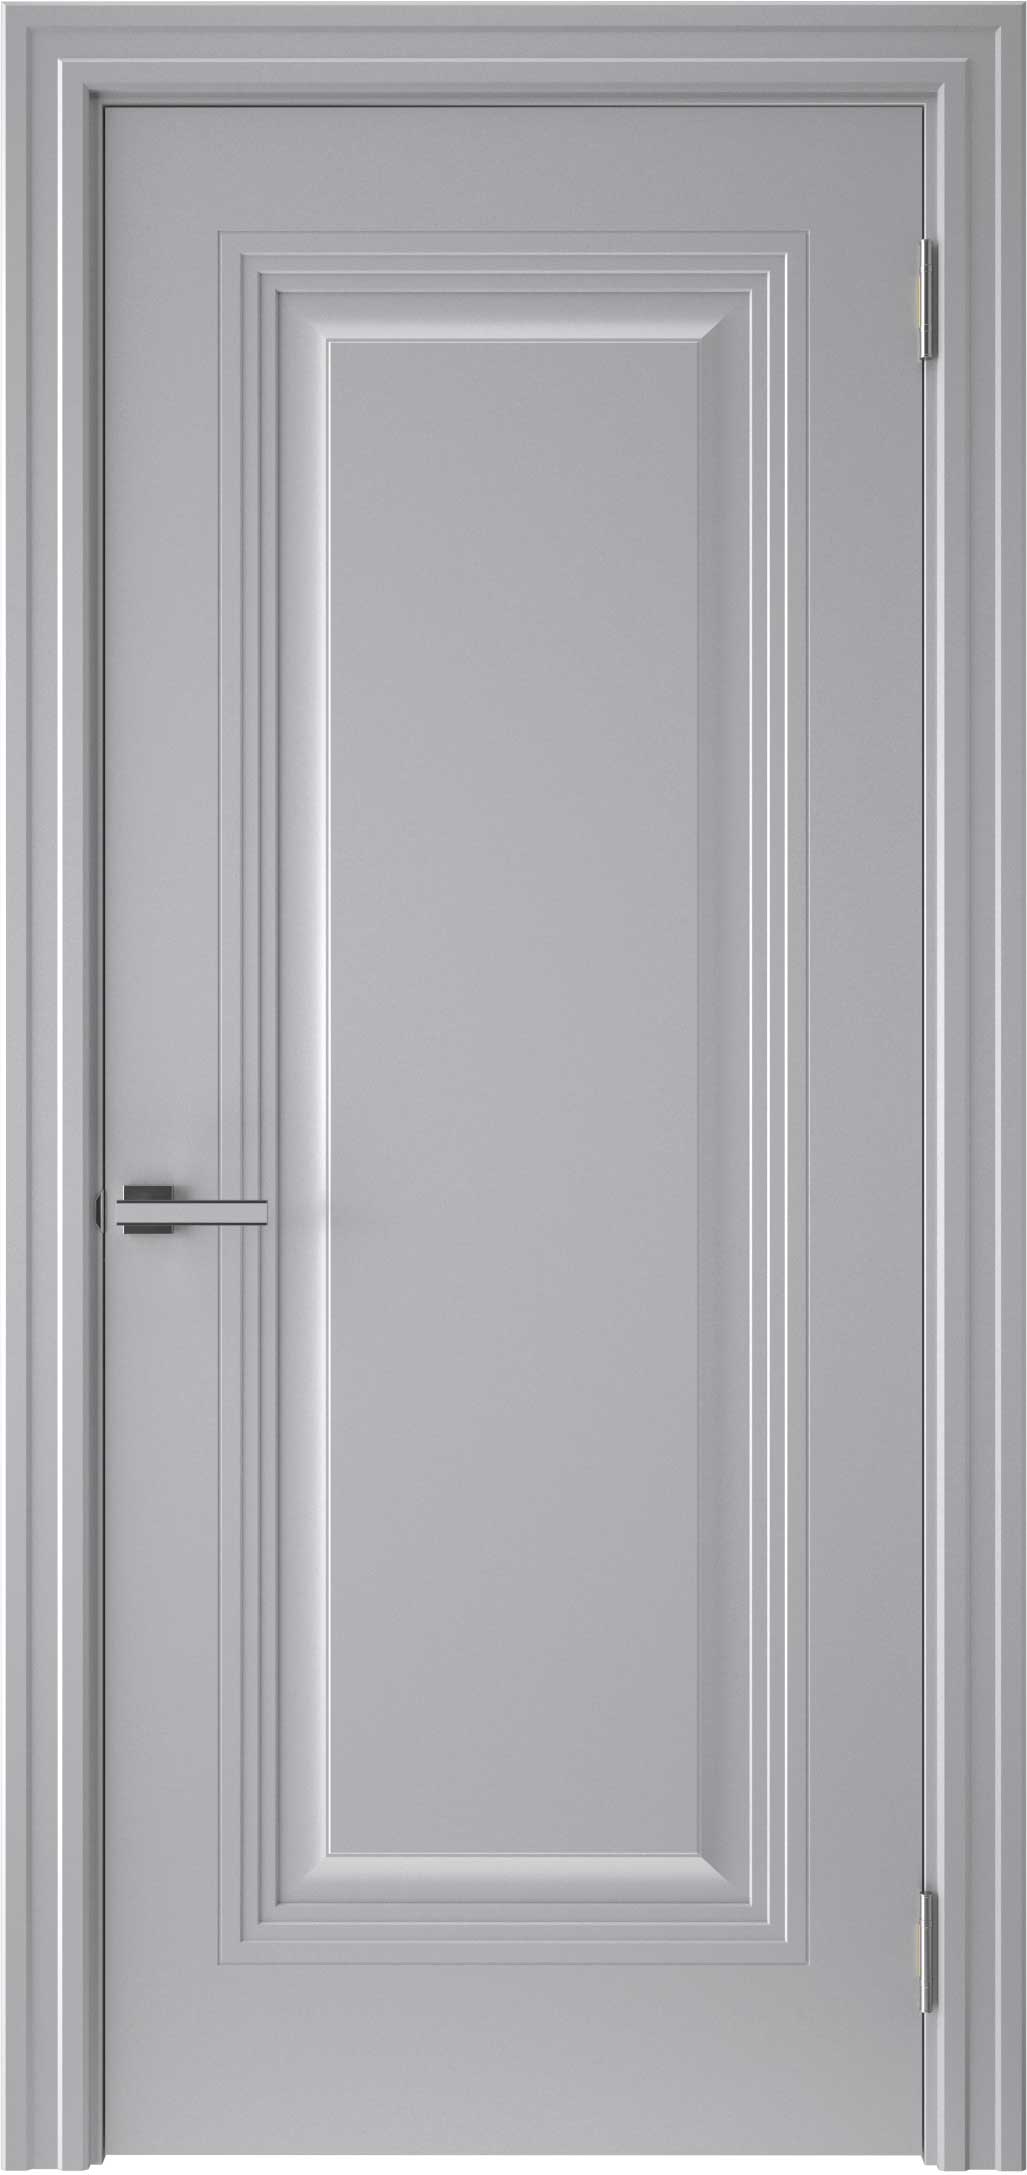 Двери крашеные (Эмаль) ТЕКОНА Смальта-48 глухое Серый ral 7036 размер 200 х 60 см. артикул F0000096595